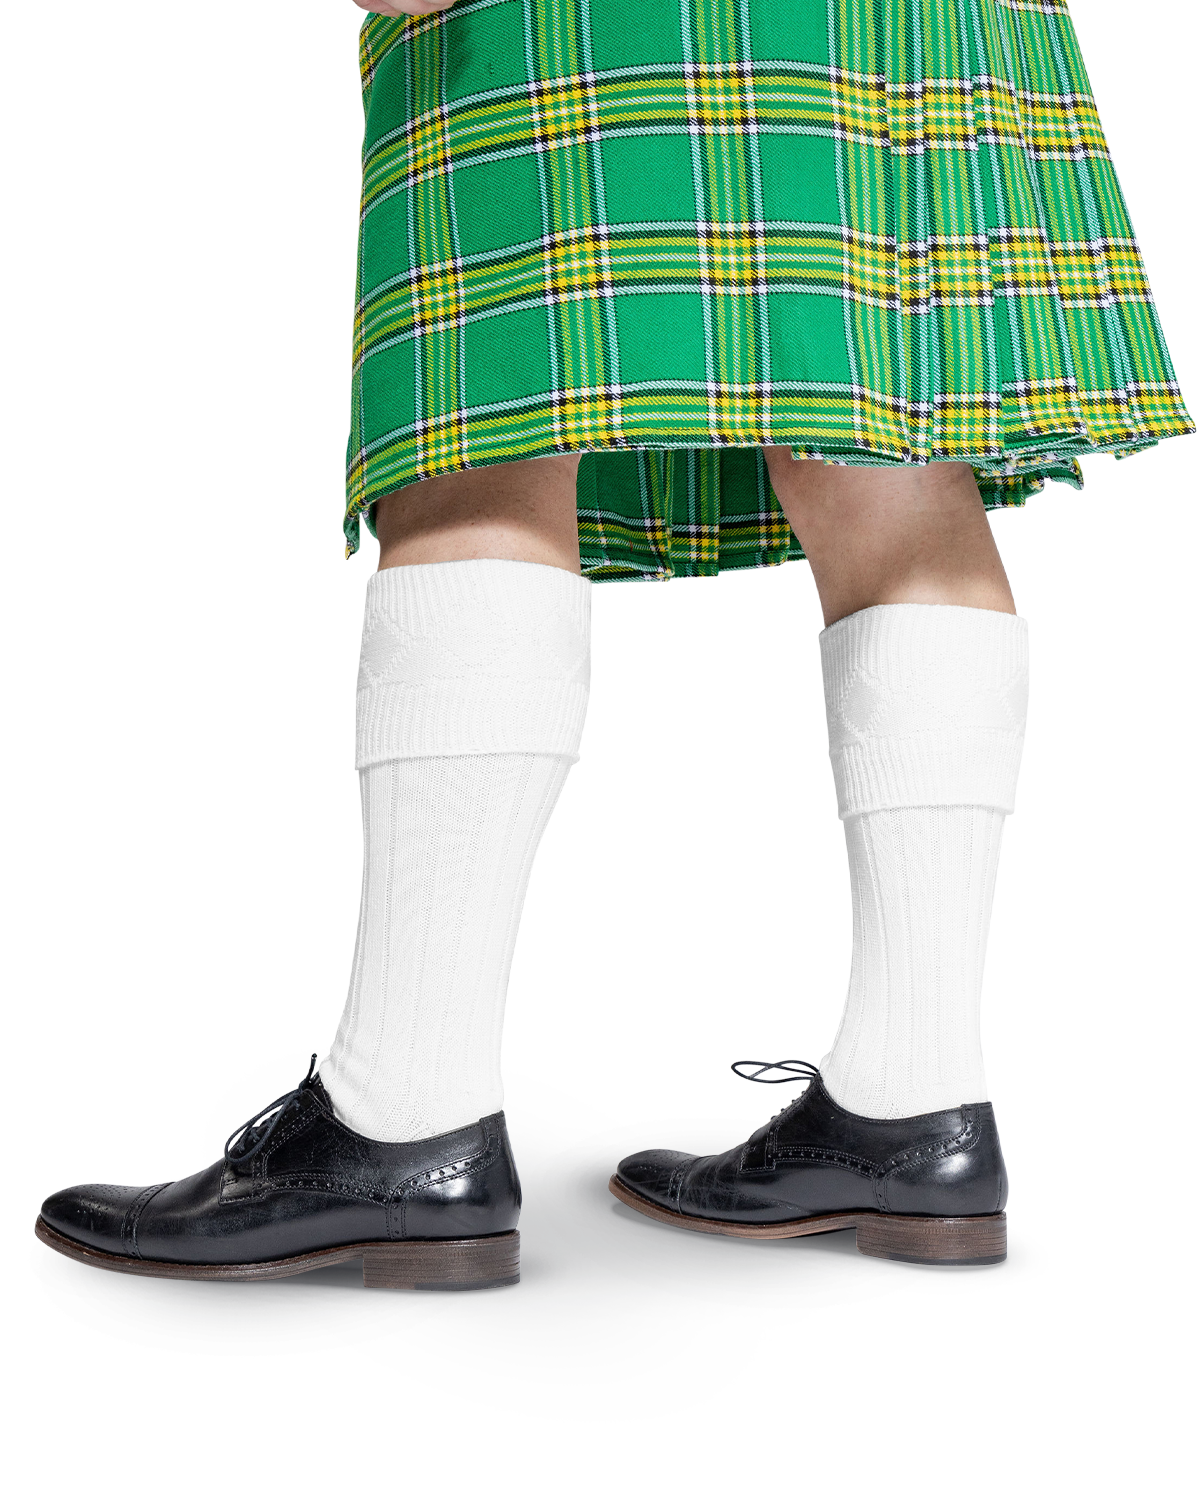 Scottish Kilt Hose - White Cover